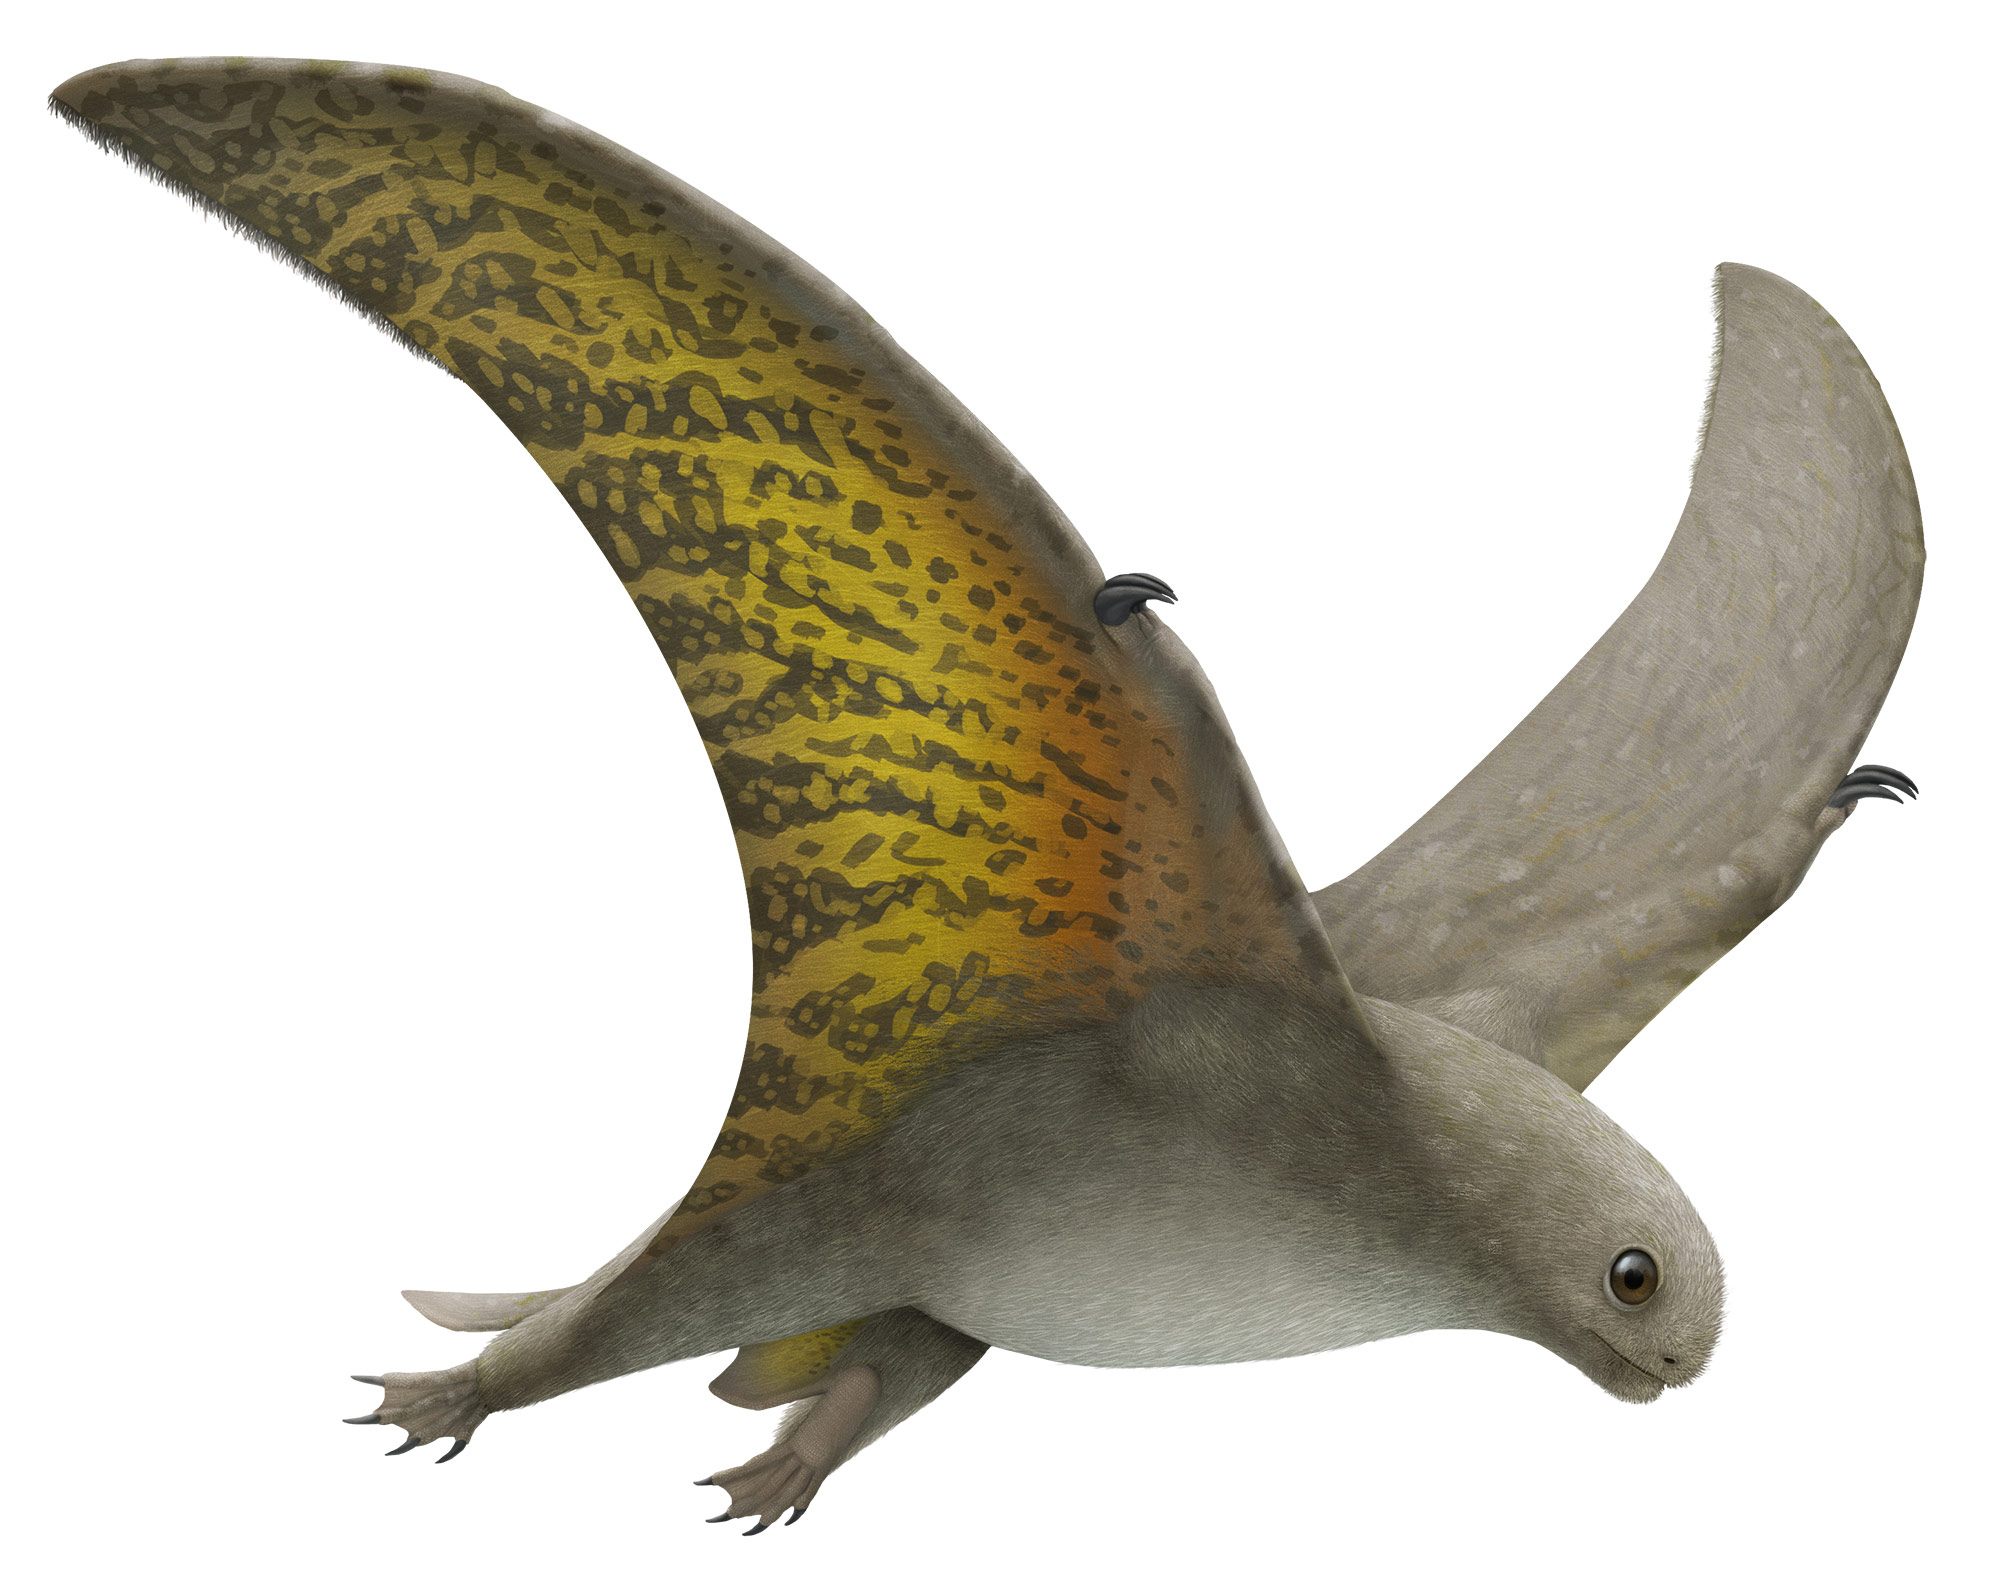 Pteranodon - Pteros